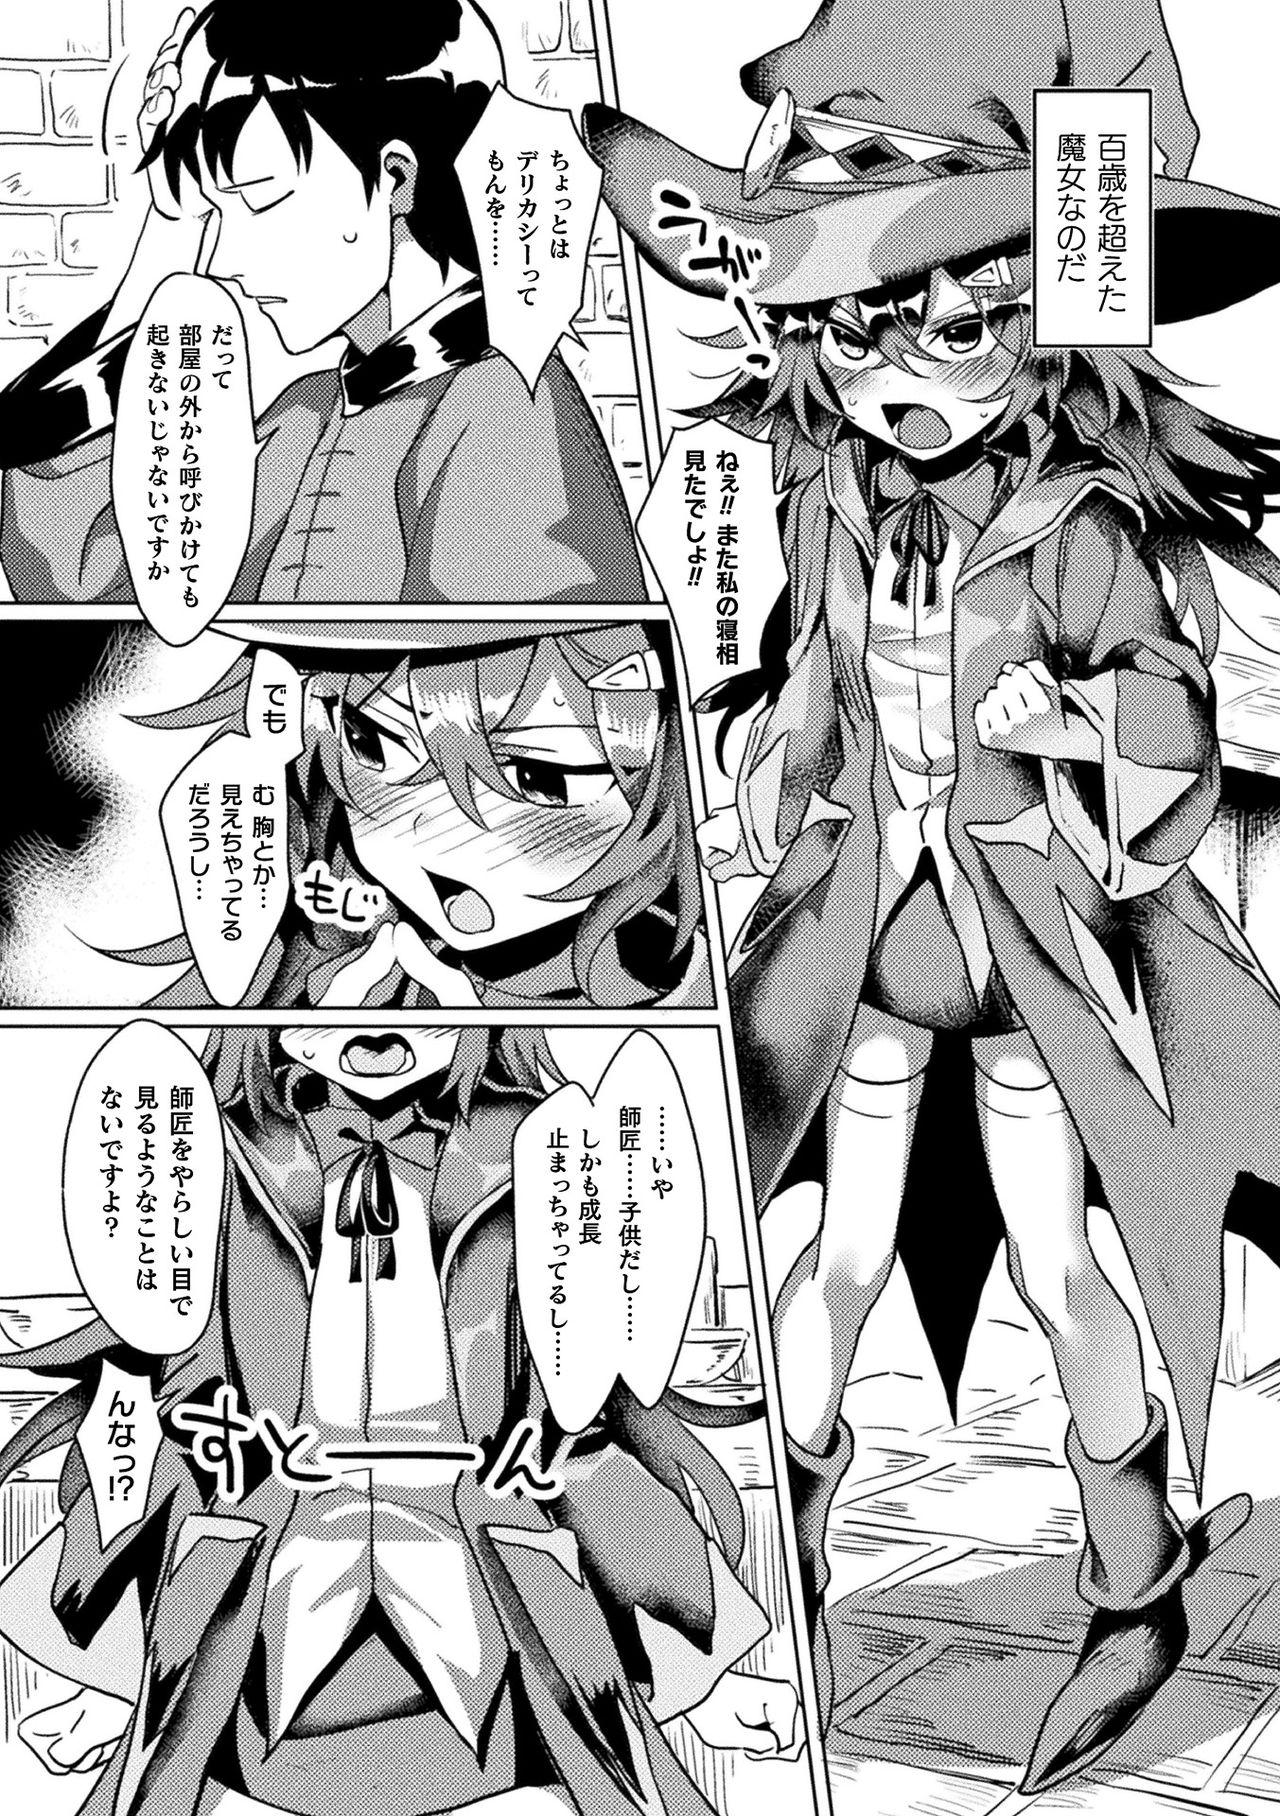 [Anthology] Bessatsu Comic Unreal Ponkotsu Fantasy Heroine H ~Doji o Funde Gyakuten Saretari Ero Trap ni Hamattari!?~ Vol. 1 [Digital] 22